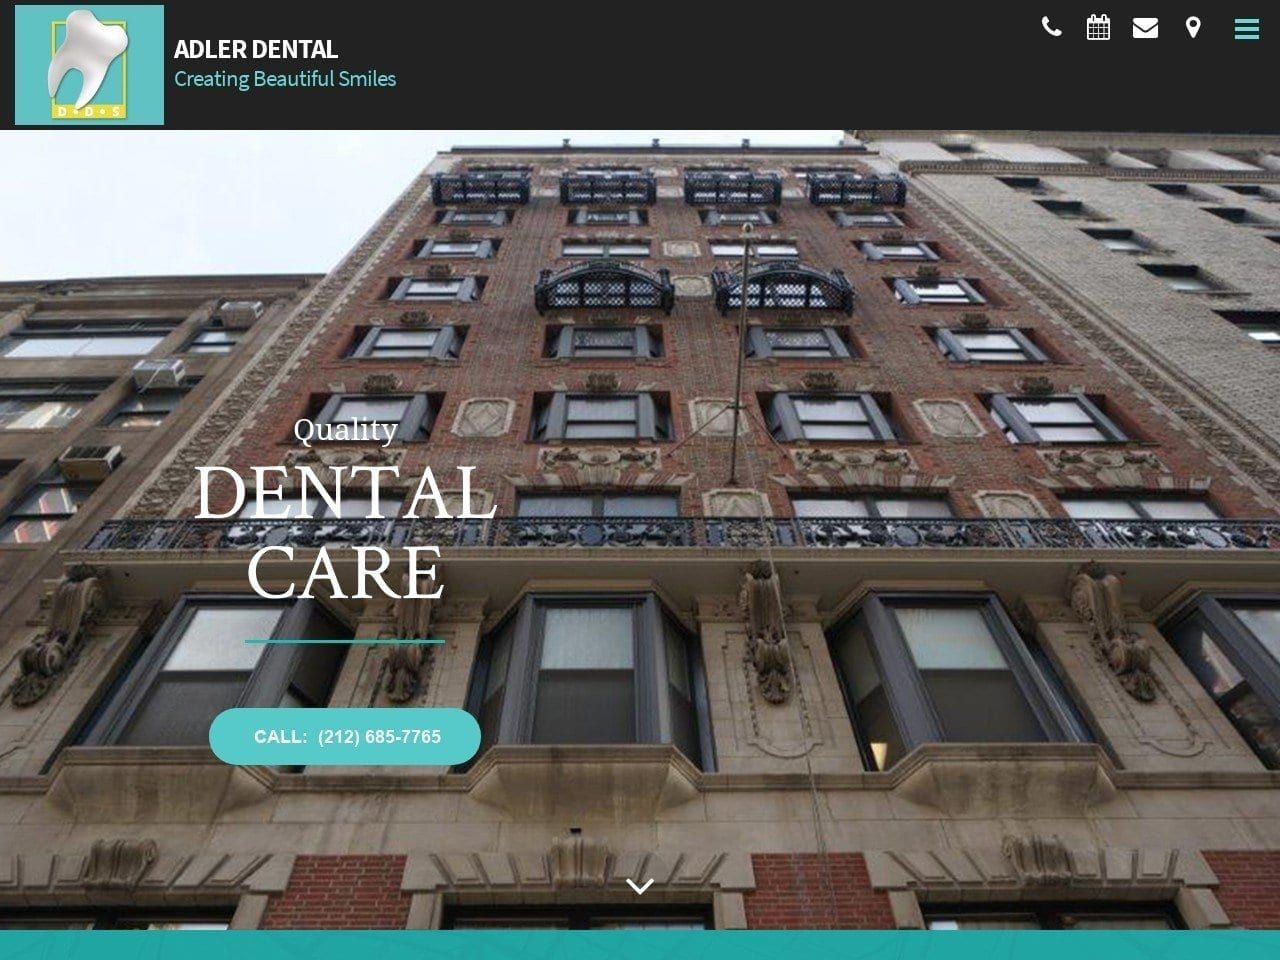 Adler Dental Pc Website Screenshot from adlerdental.com